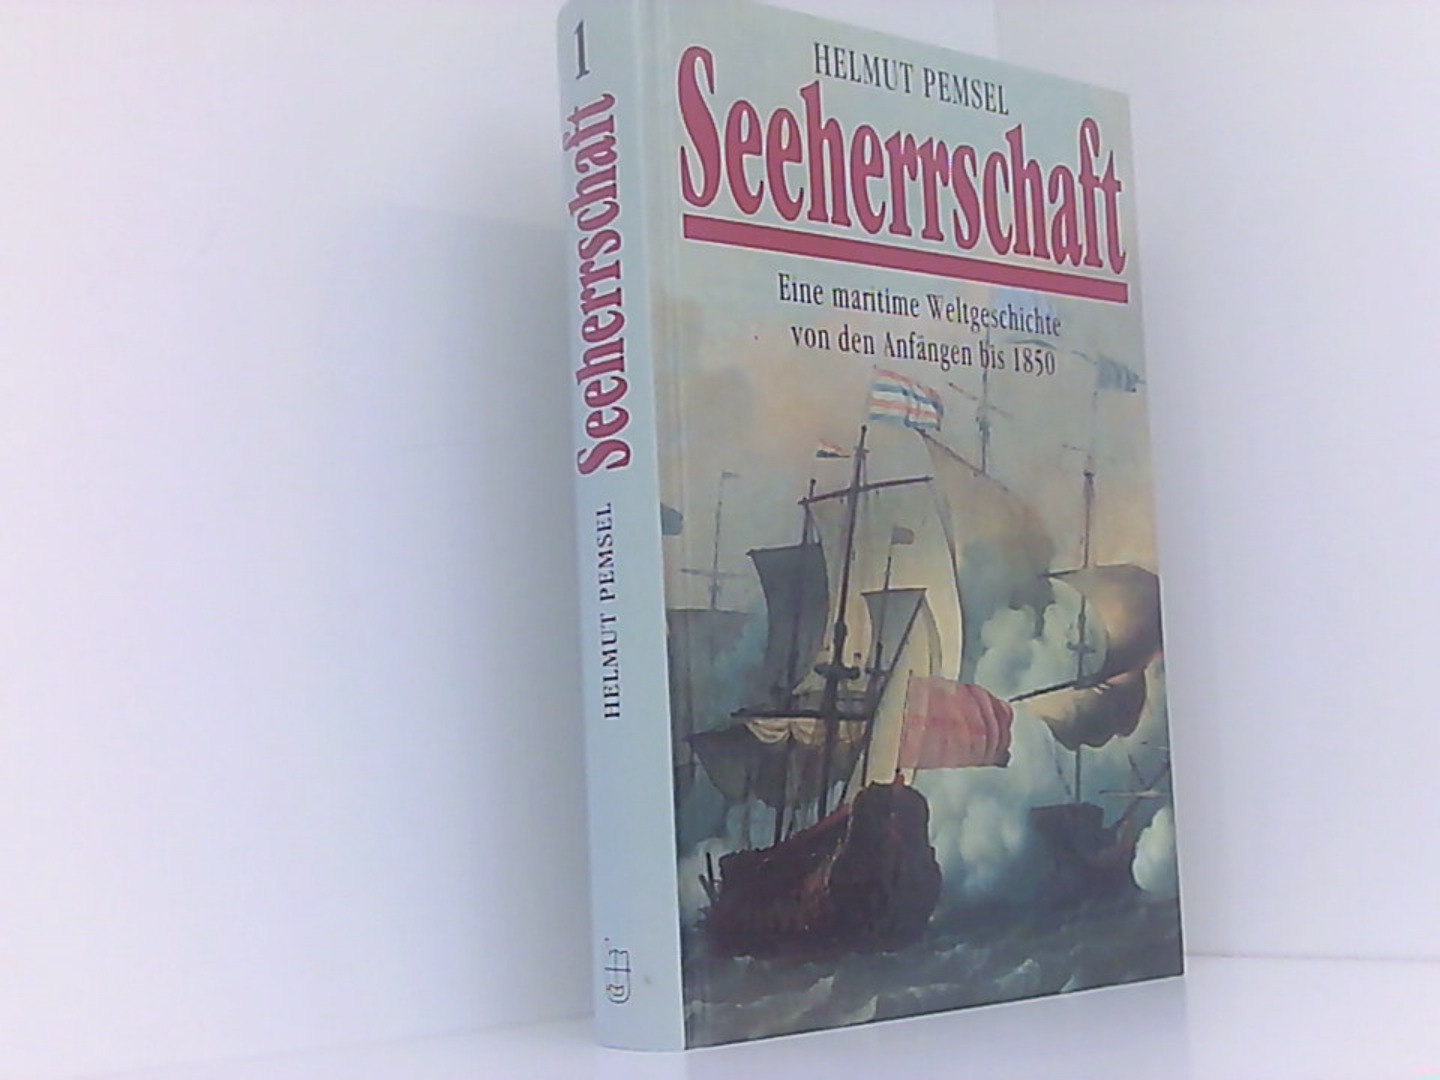 Seeherrschaft :2 Bände : Band 1 : eine maritime Weltgeschichte von den Anfängen bis 1850. Band 2 :von der Dampfschifffahrt bis zur Gegenwart. - Pemsel, Helmut